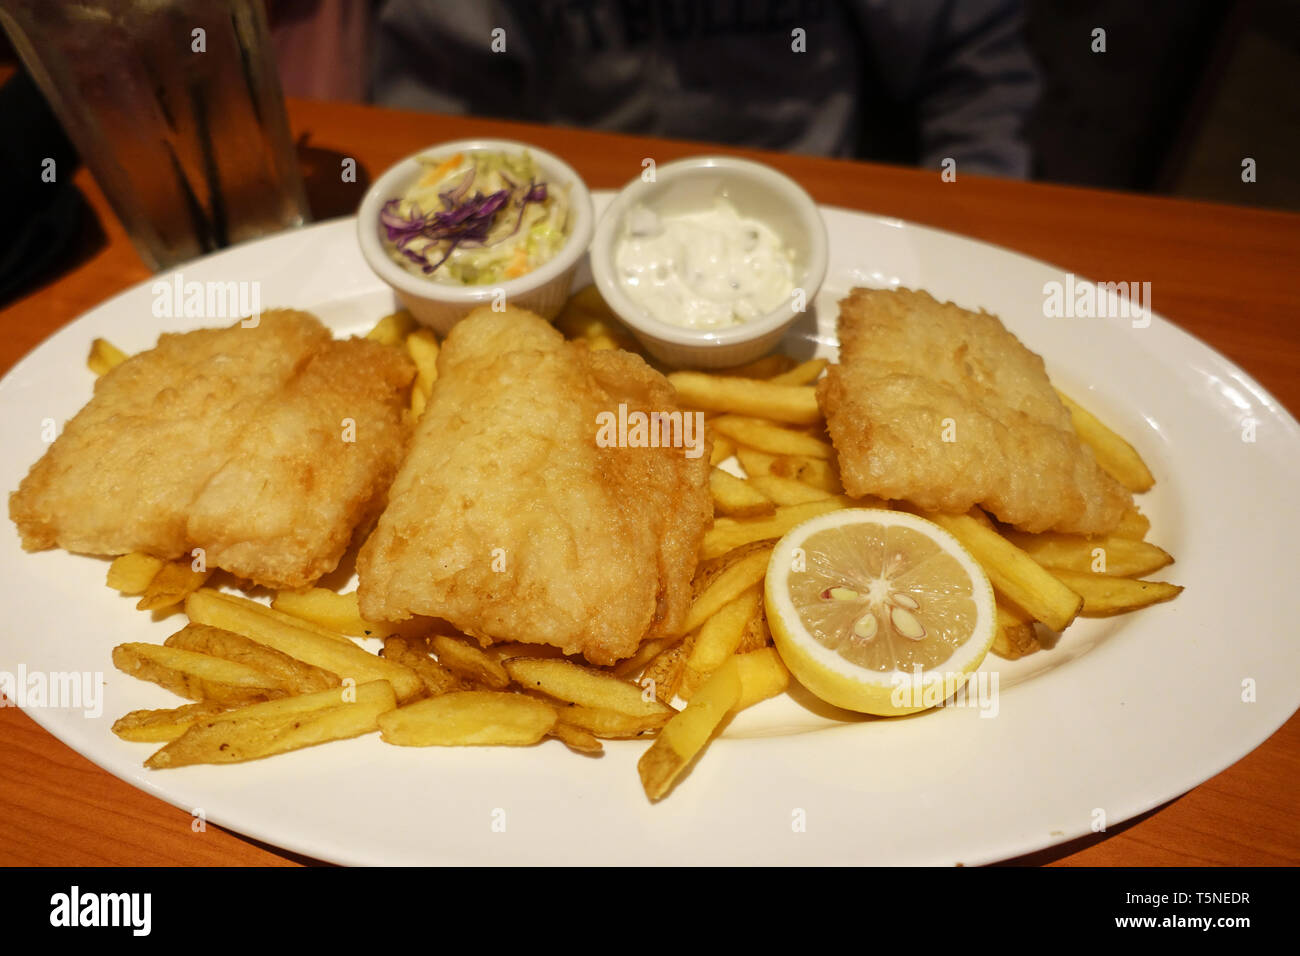 El pescado con patatas fritas y salsa tártara, coleslaw y limón sobre placa blanca. Foto de stock